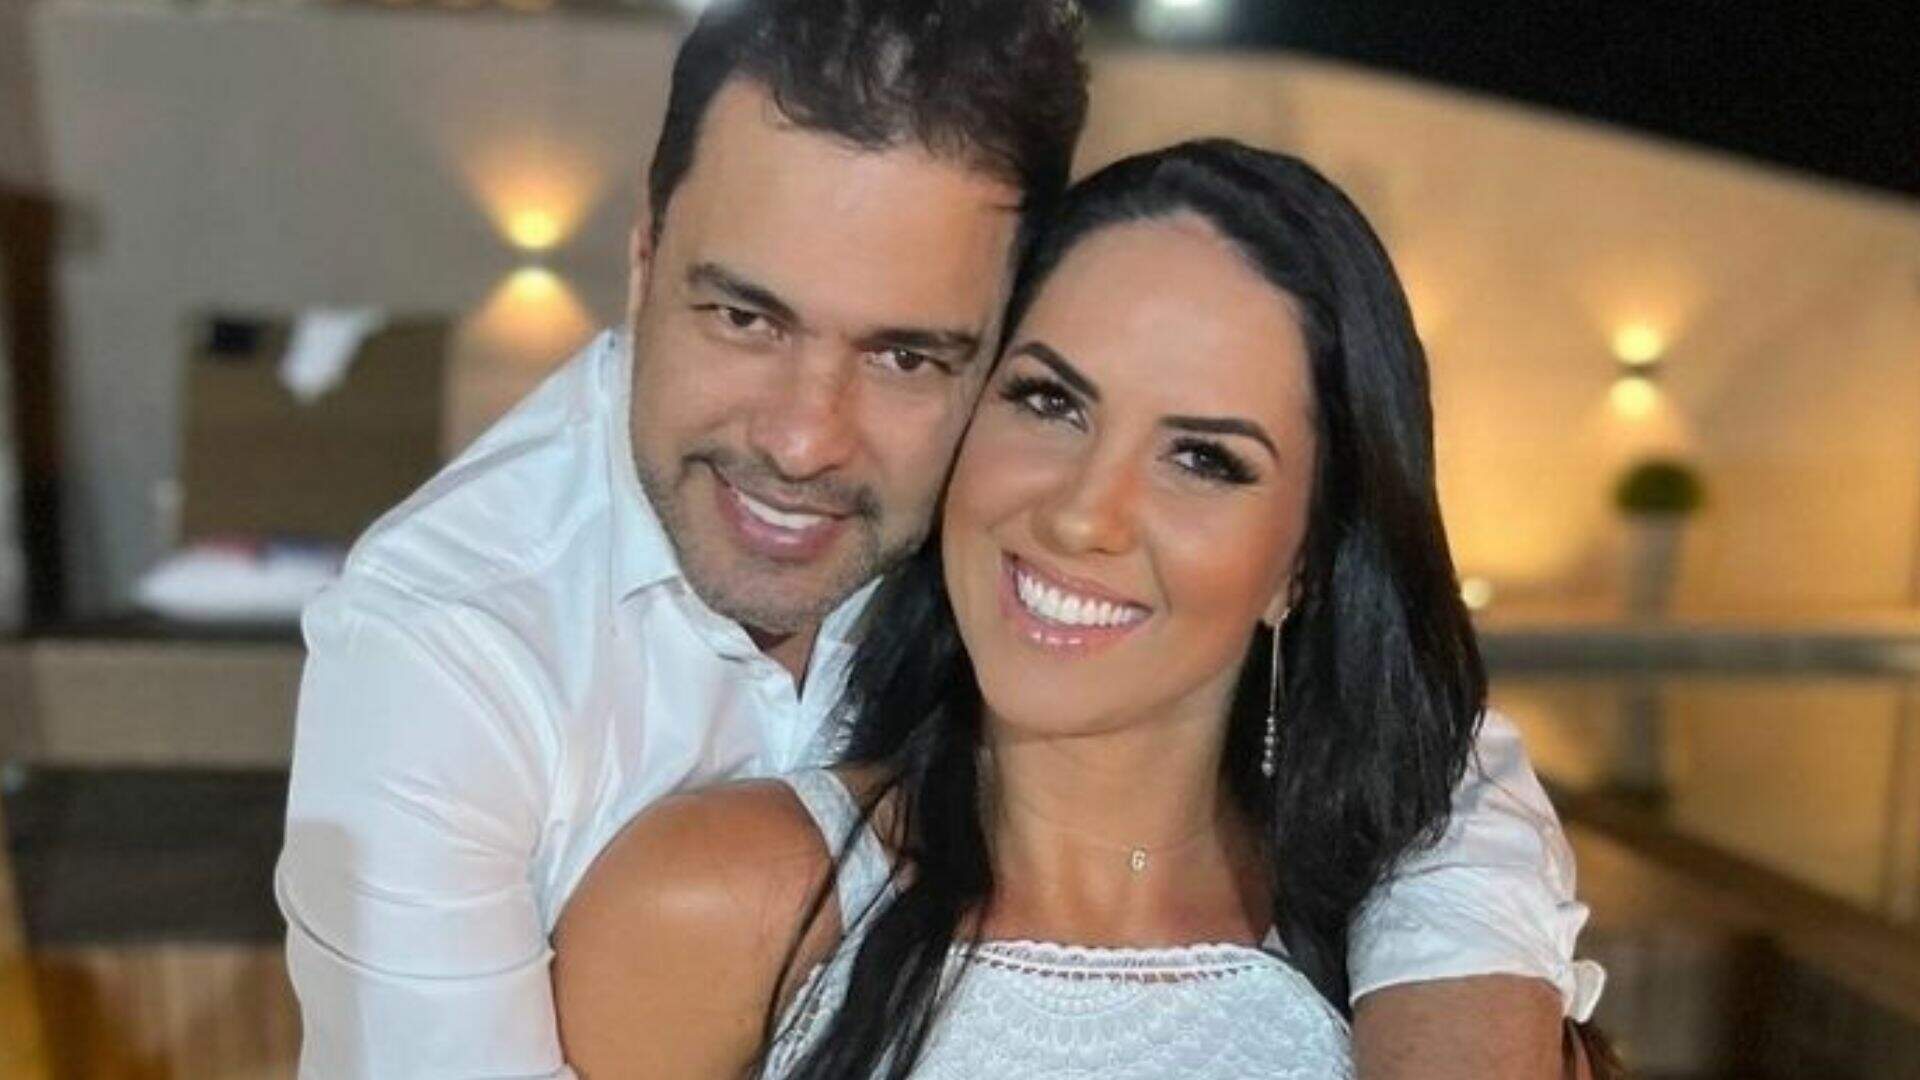 Condição?! Zezé di Camargo revela motivo de não ter casado com Graciele: “Está faltando isso” - Metropolitana FM